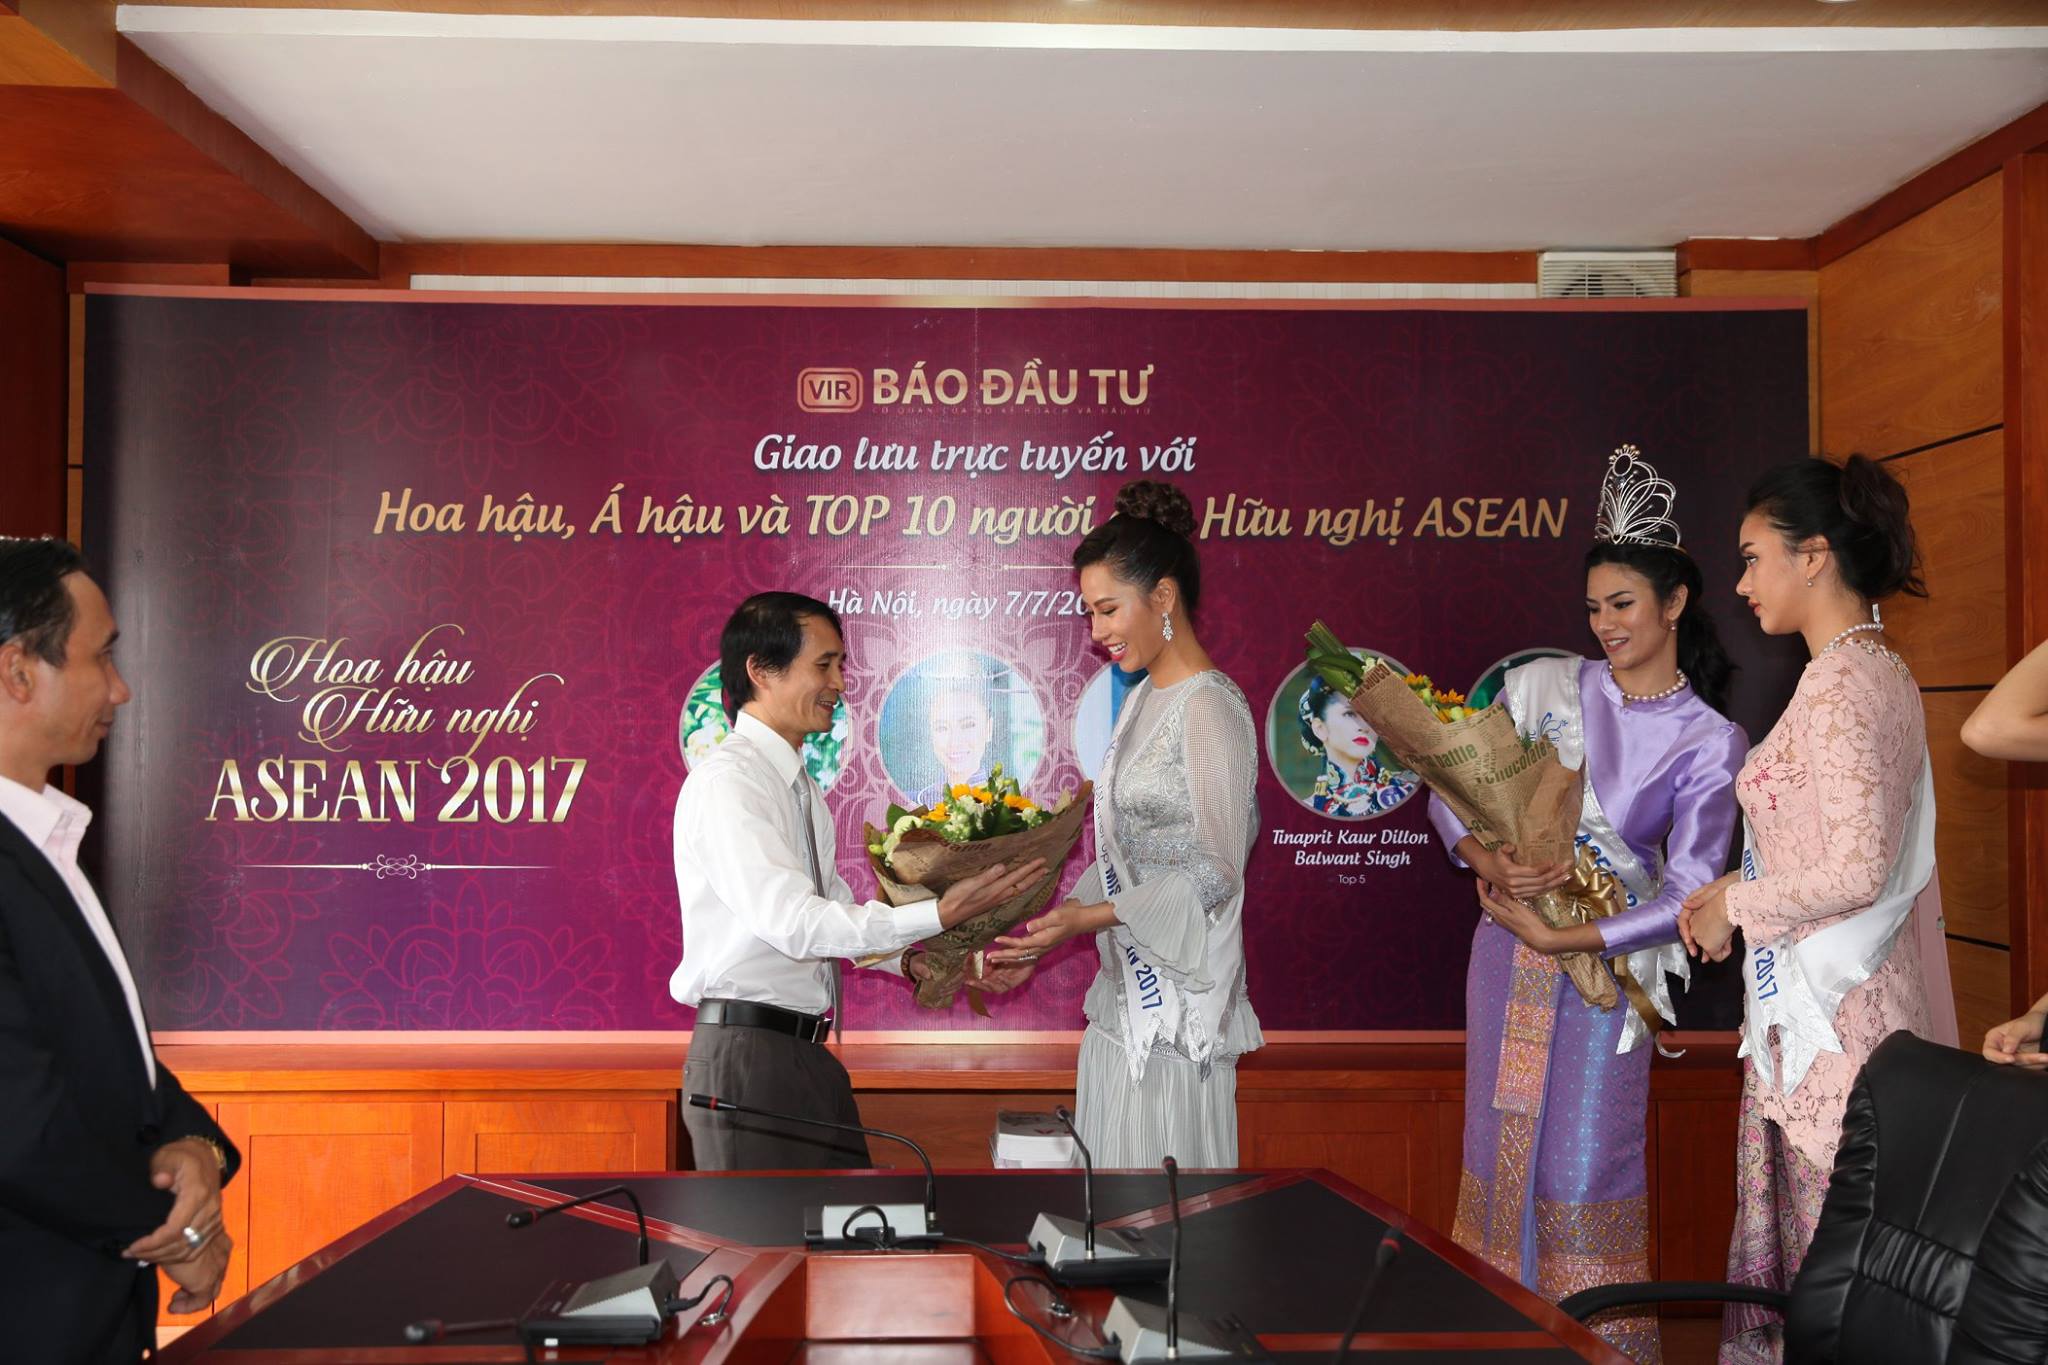 Ông Bùi Đức Hải tặng hoa cho Á hậu 1 Huỳnh Thị Yến Nhi. Cô cũng đồng thời sở hữu danh hiệu Người đẹp du lịch - Miss ASEAN Frendship 2017